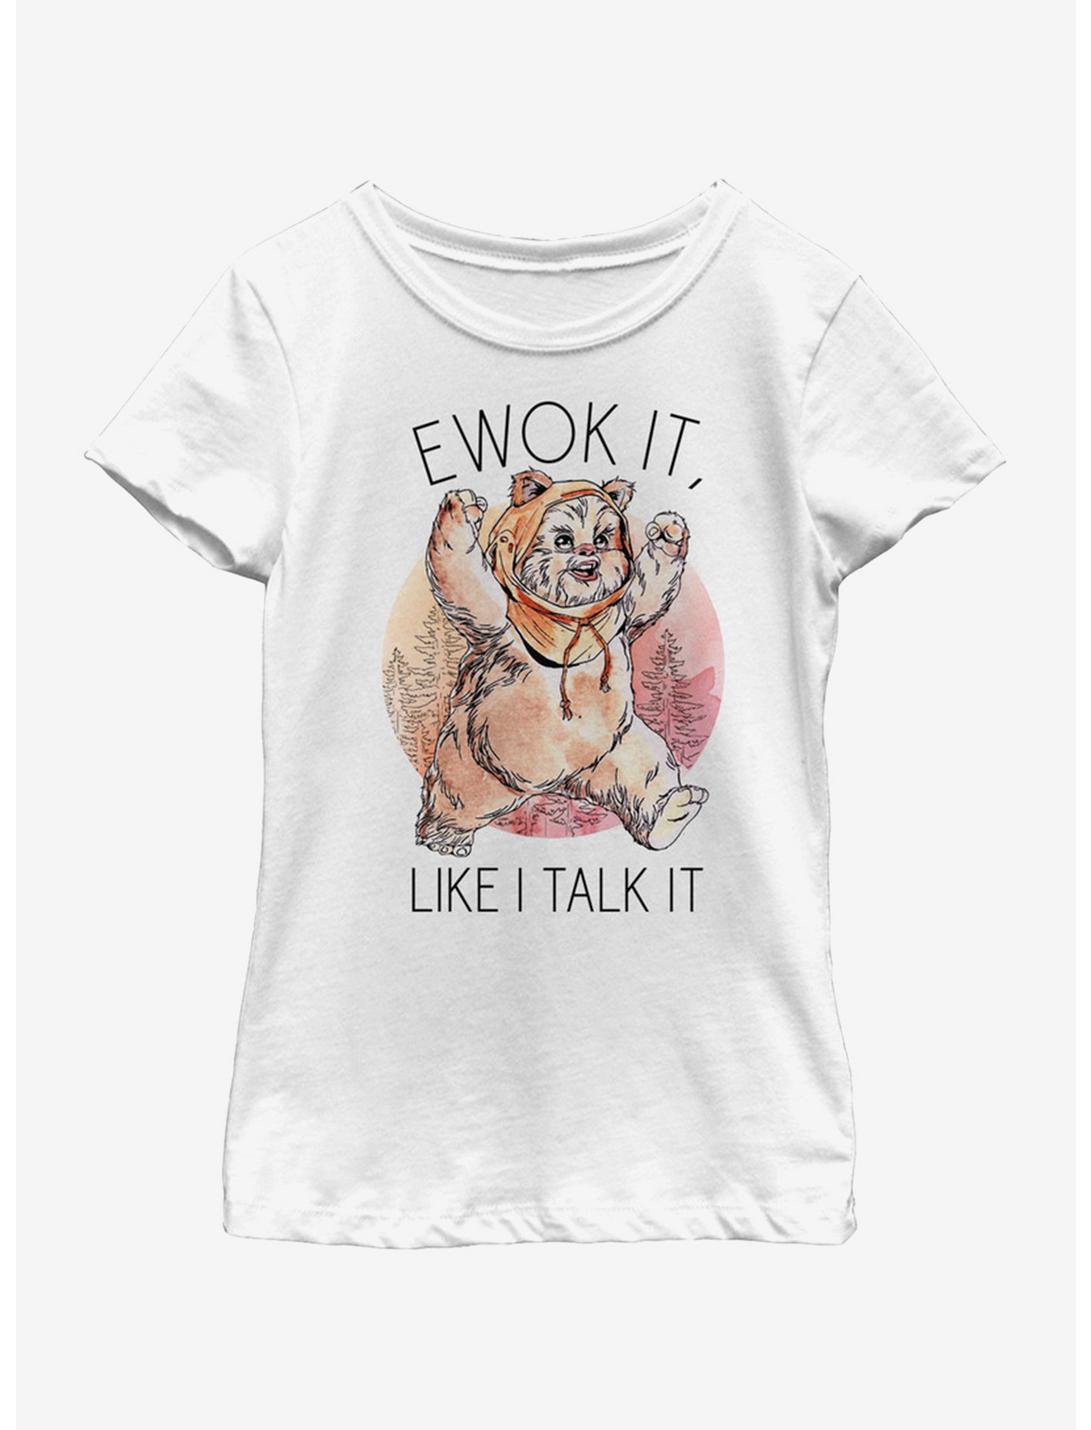 Star Wars Ewok It Youth Girls T-Shirt, WHITE, hi-res